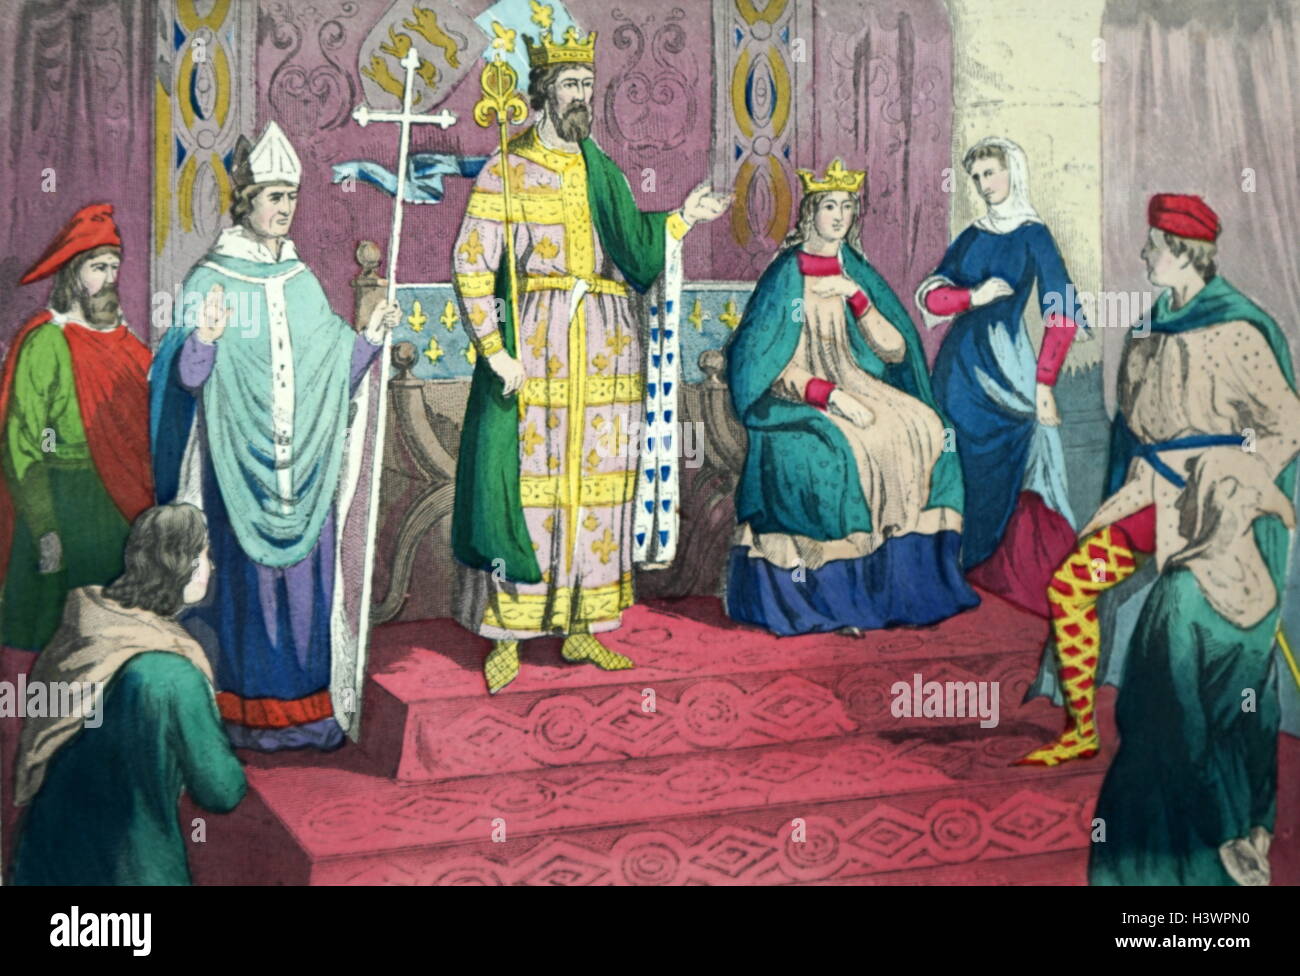 Farbe Abbildung: Darstellung von Kostümen aus dem 13. Jahrhundert in England, darunter: ein Gentleman, Arzt, Bischof, König, Dame, Dame, Edelmann, und rustikal. Vom 13. Jahrhundert Stockfoto